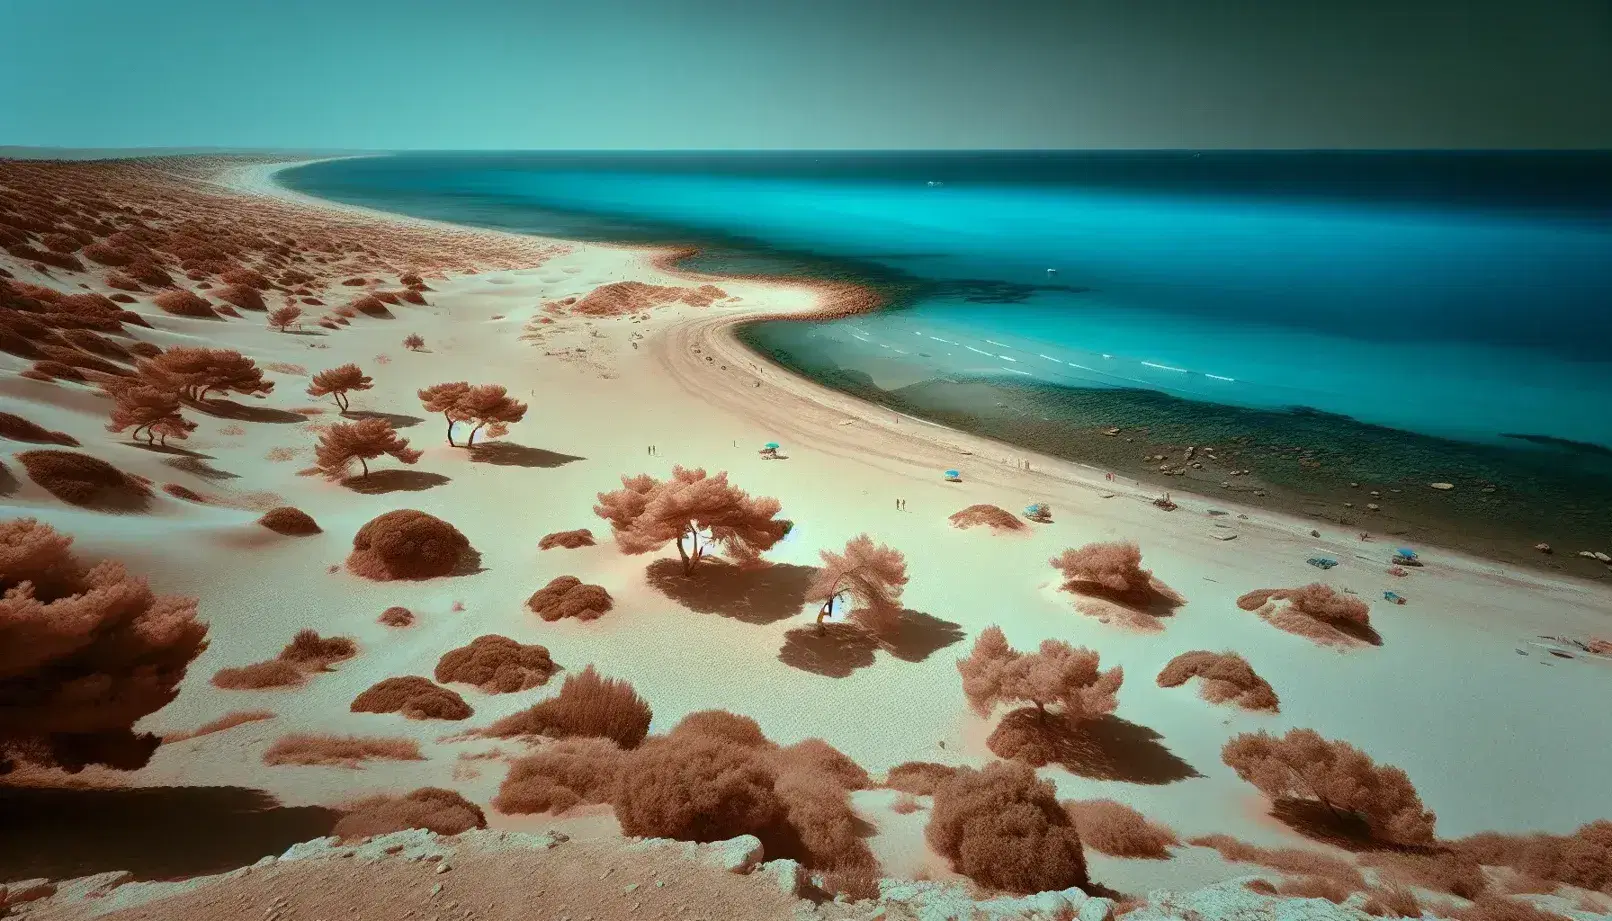 Paesaggio costiero mediterraneo con dune sabbiose secche, ulivi stressati dall'acqua, mare cobalto, costa rocciosa erosa e turbine eoliche in lontananza.